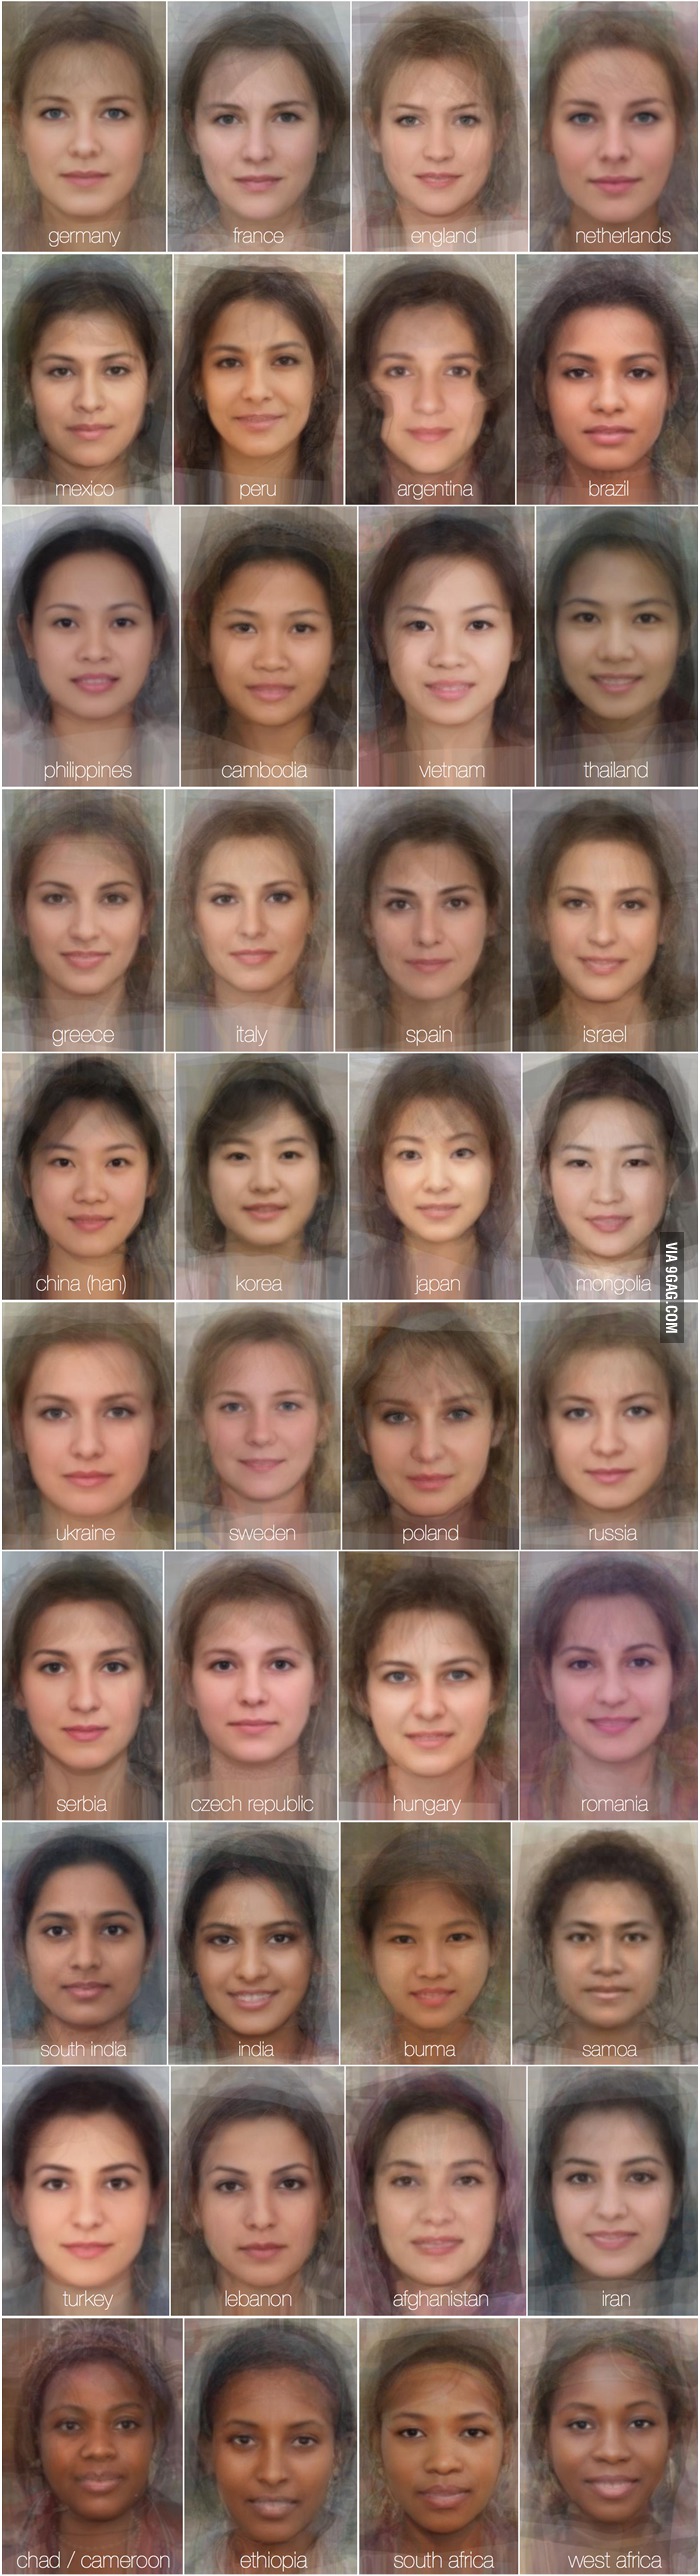 estudio creativo los rostros de las mujeres del mundo